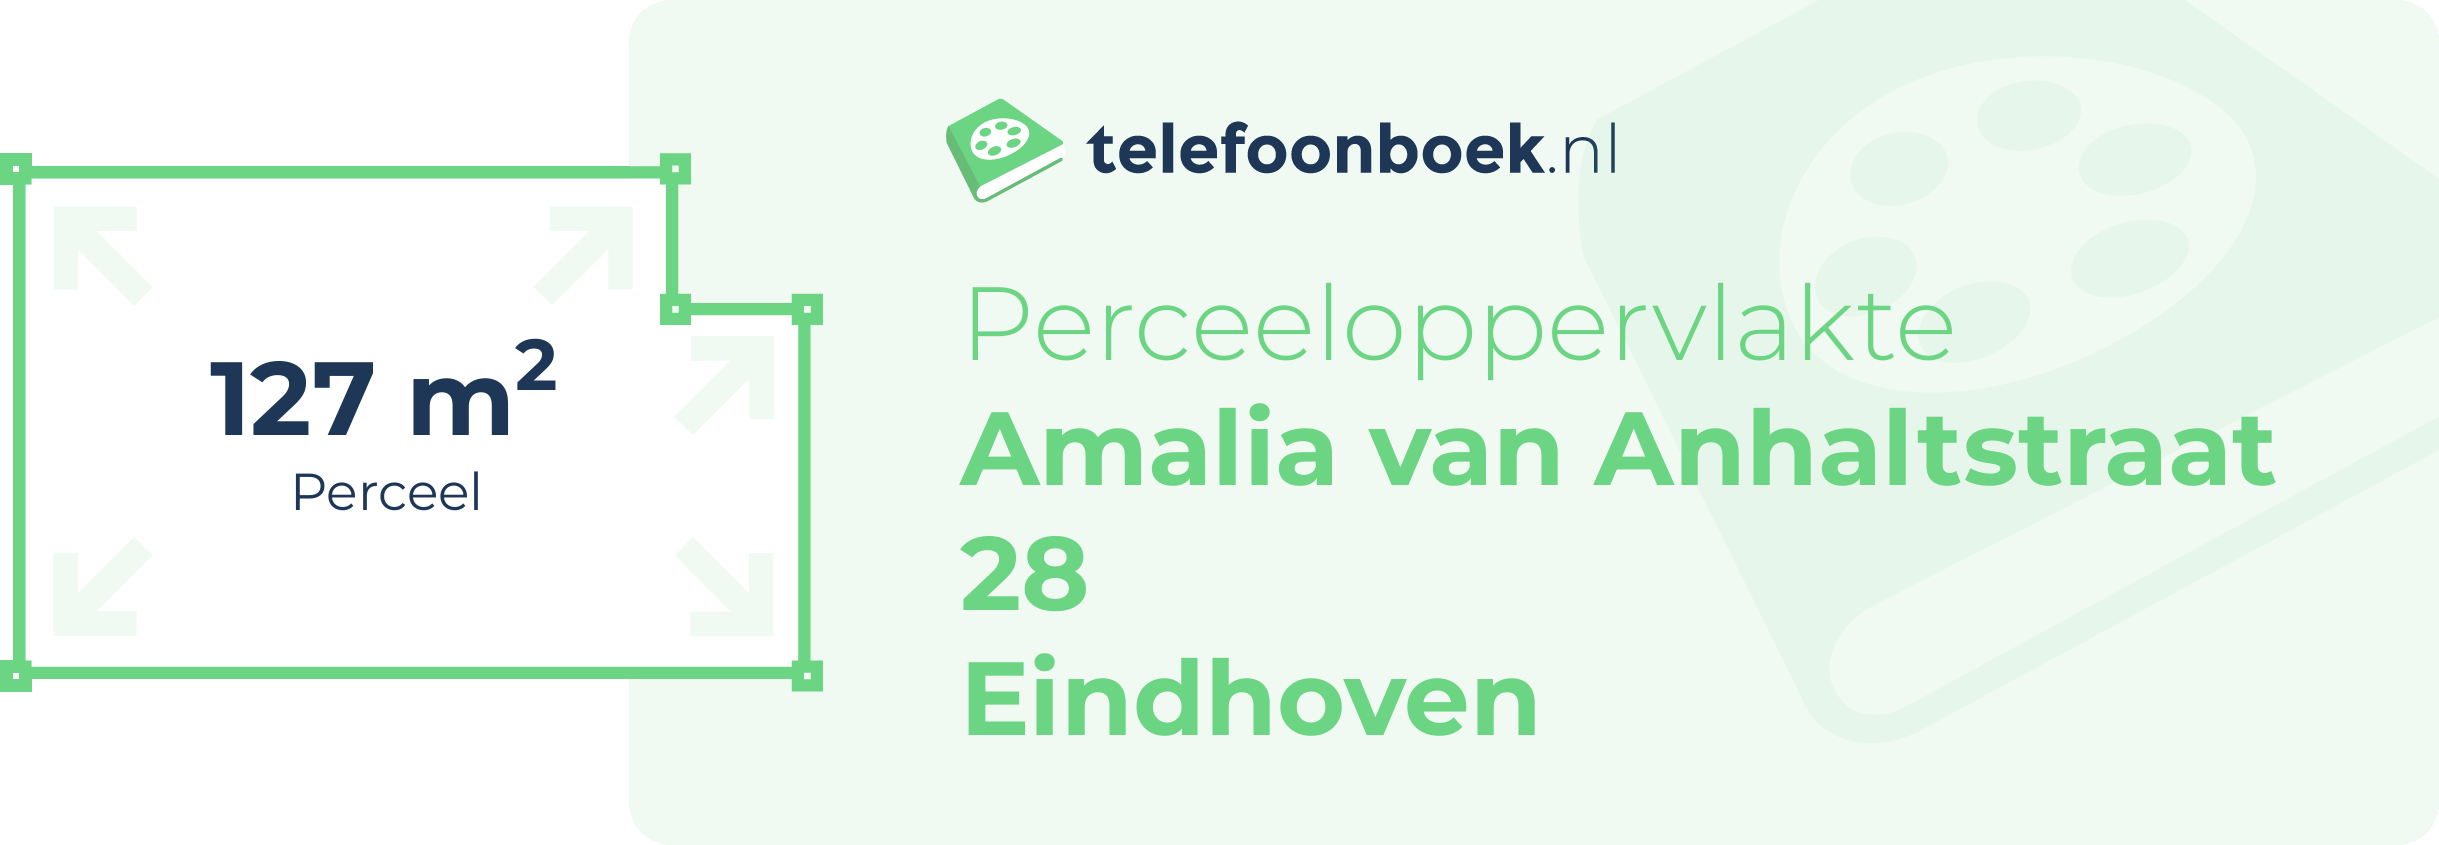 Perceeloppervlakte Amalia Van Anhaltstraat 28 Eindhoven